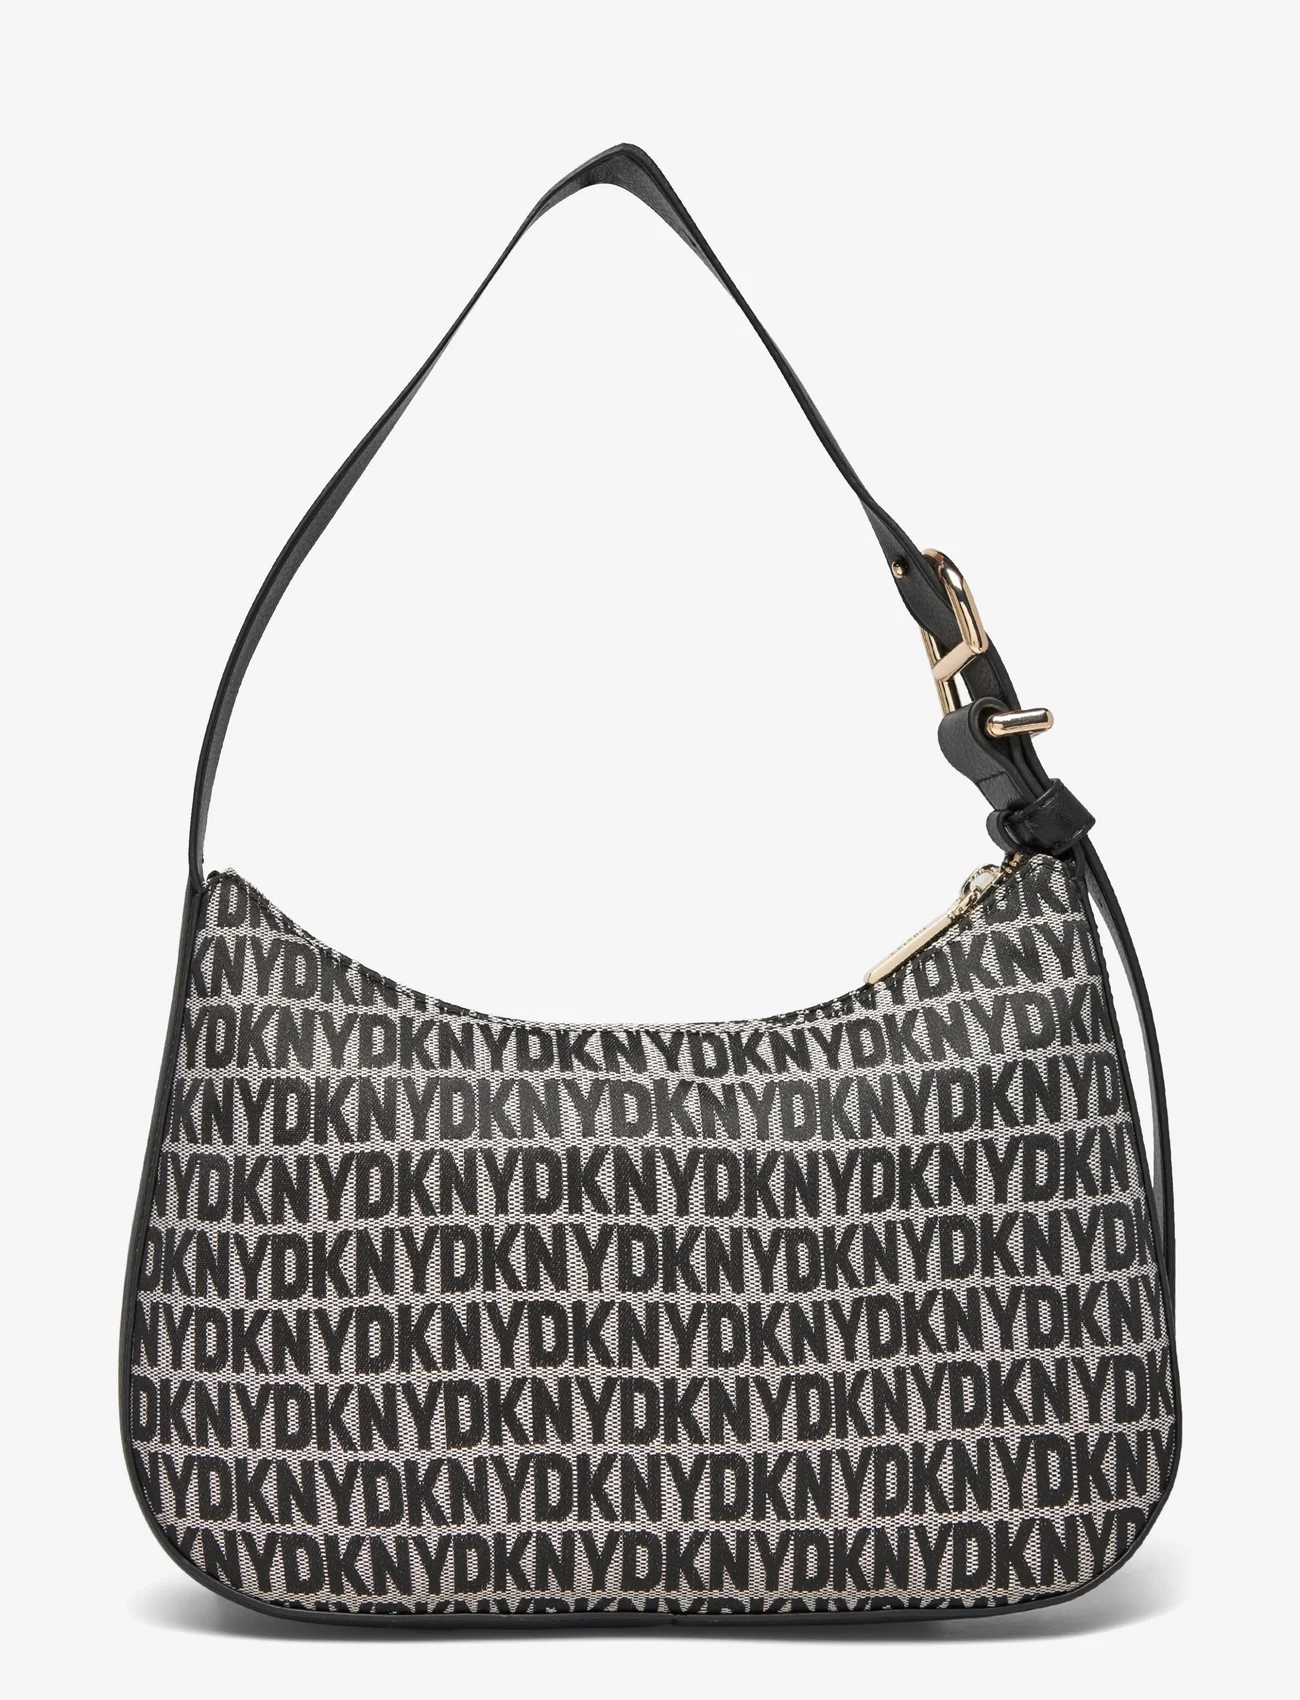 DKNY Bags - DEENA TZ SHOULDER BAG - fødselsdagsgaver - xlb - bk logo-bk - 1